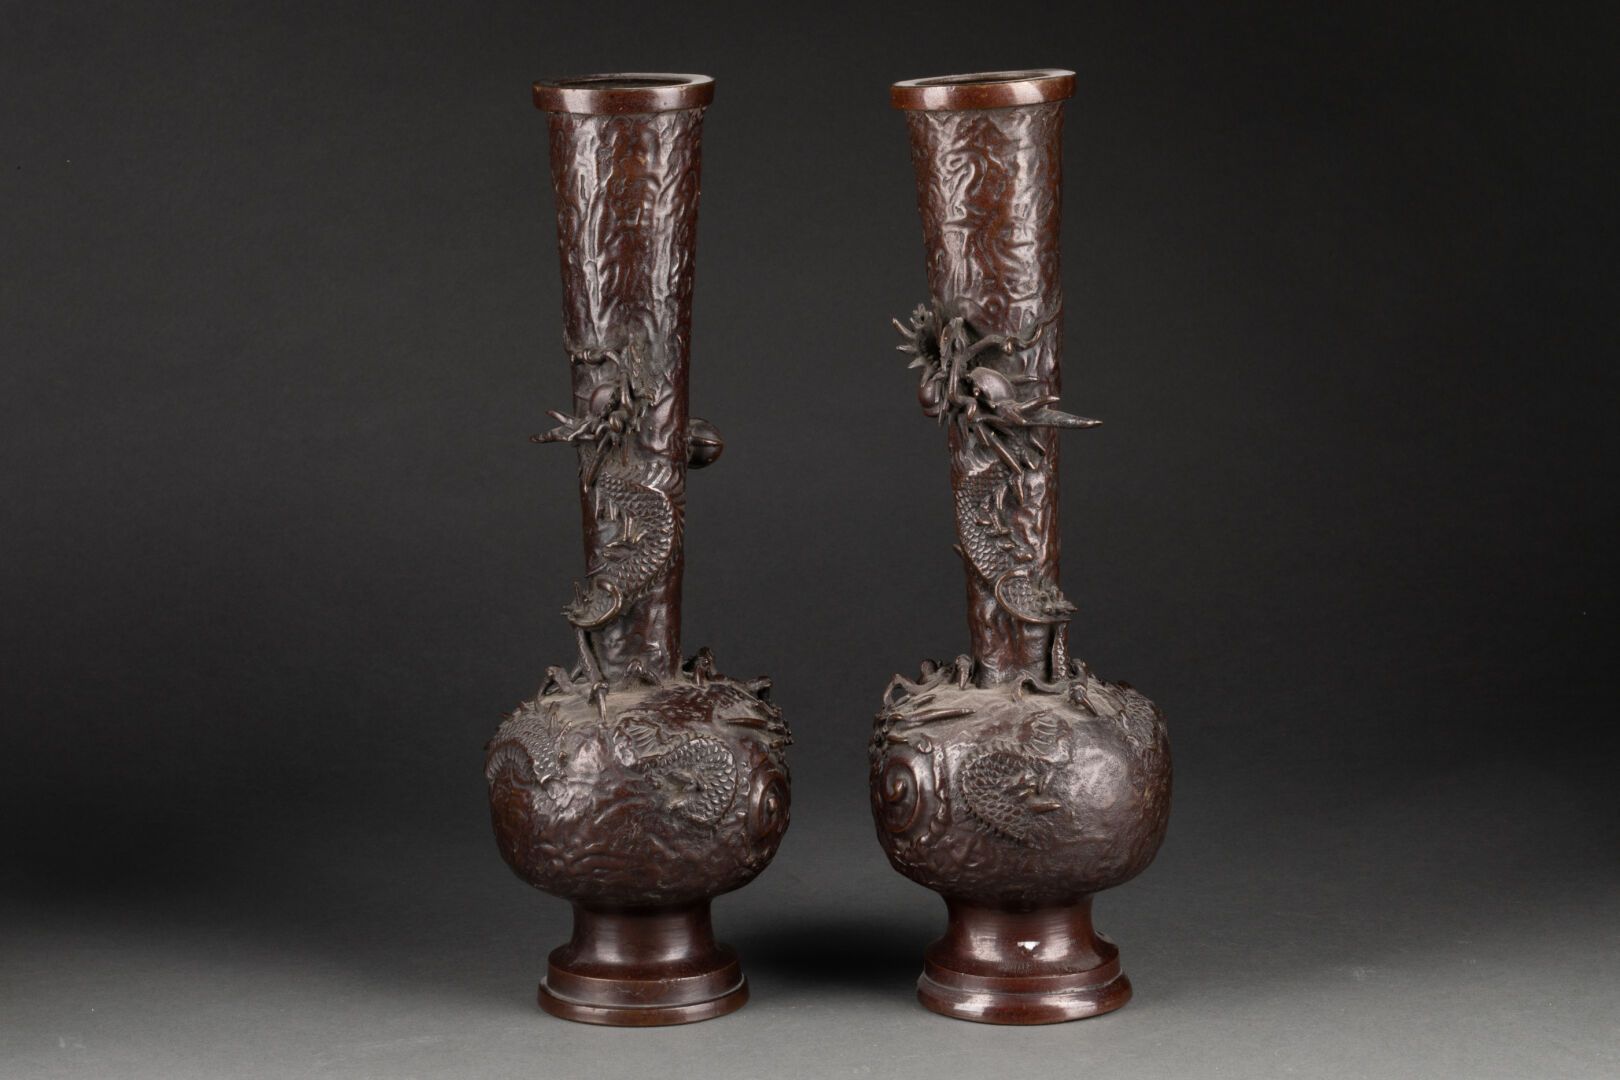 CHINE début XXe siècle 一对球体和截顶锥颈的花瓶

浮雕中的龙的装饰

带有棕色铜锈的青铜器

H.30厘米